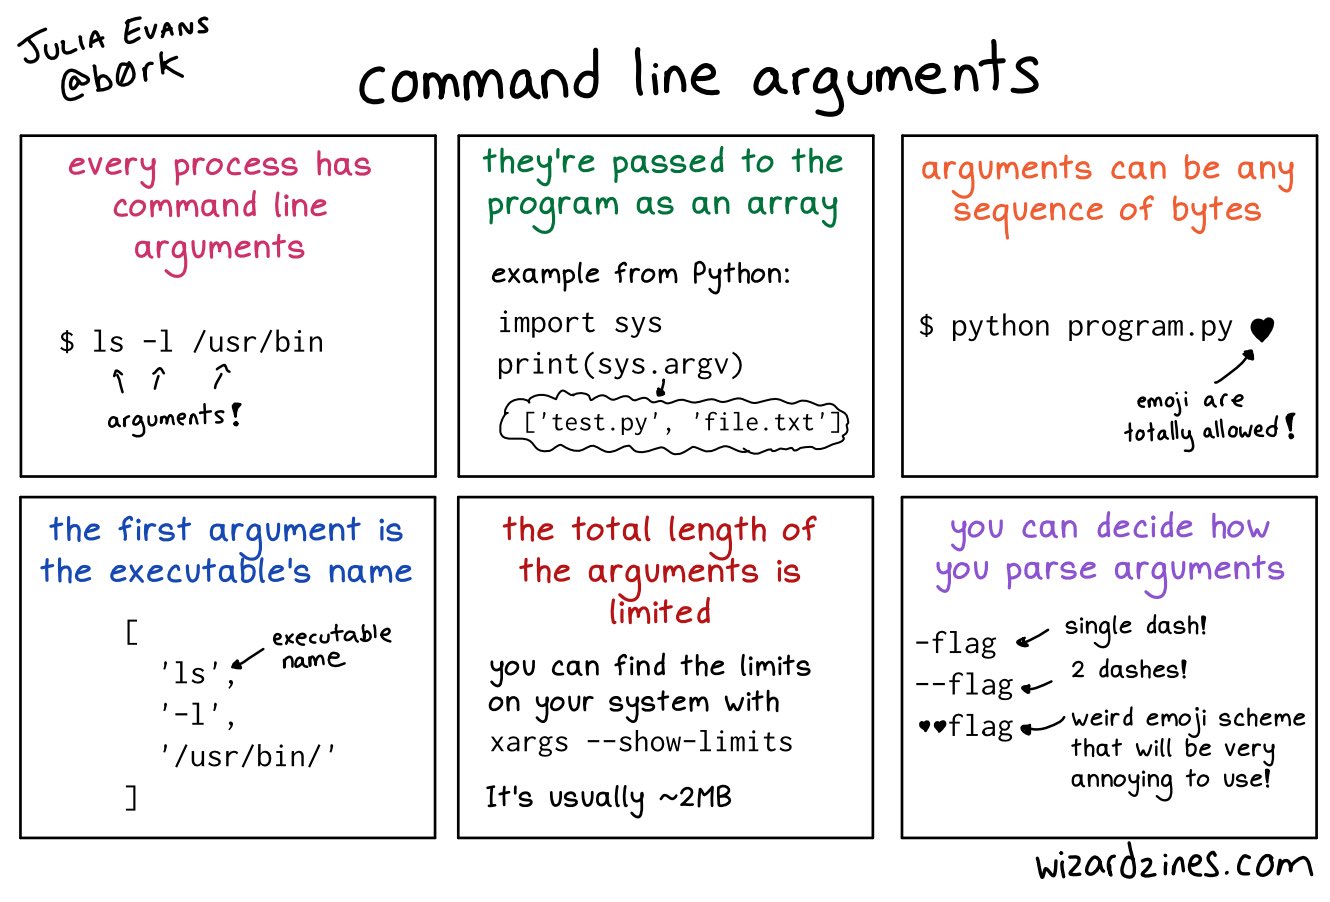 Command line arguments